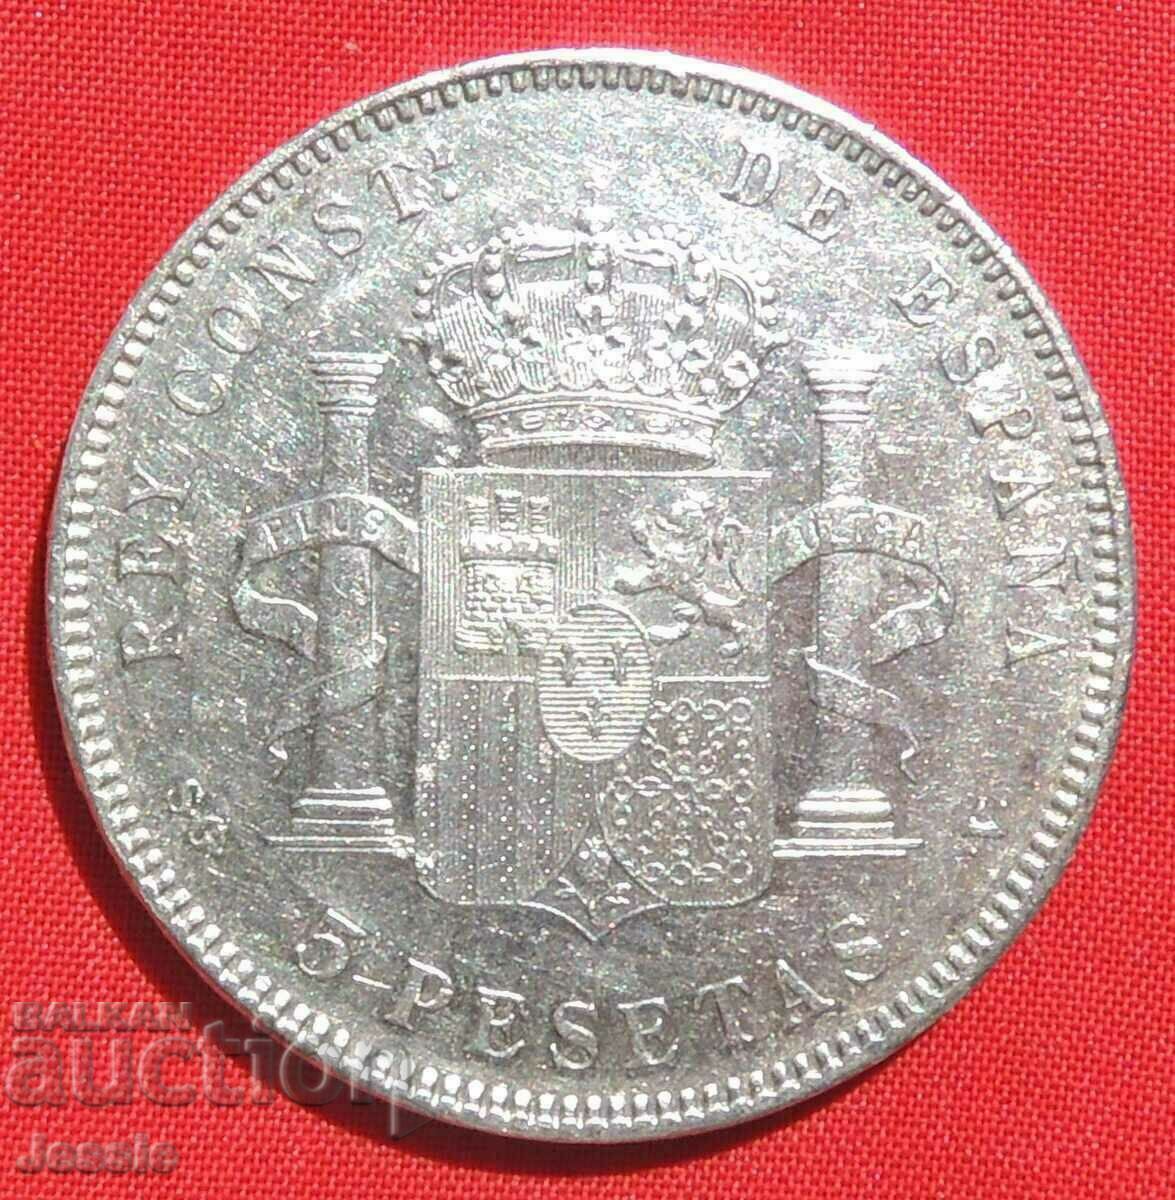 5 Pesetas 1898 S.G.V. Spain silver